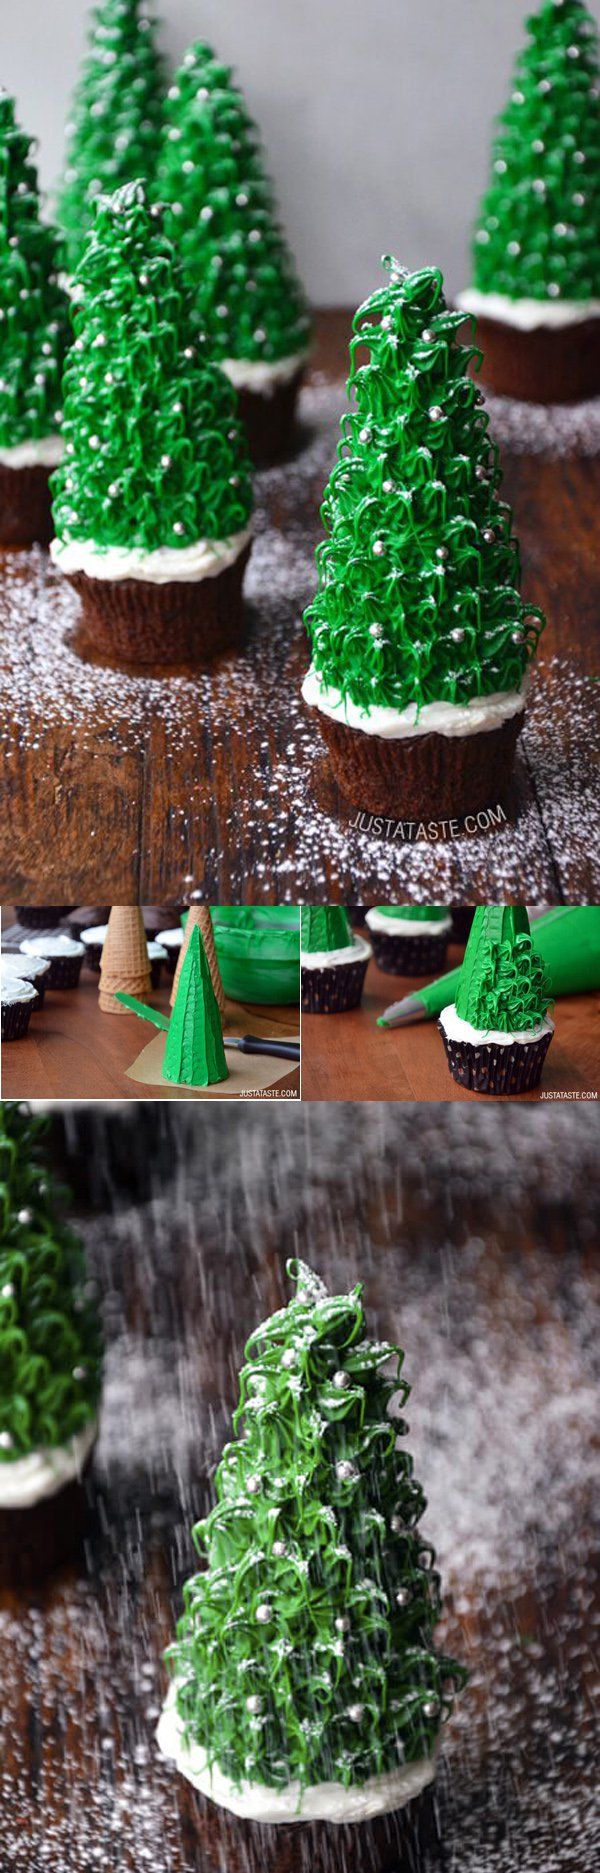 božična-drevesa-cupcakes